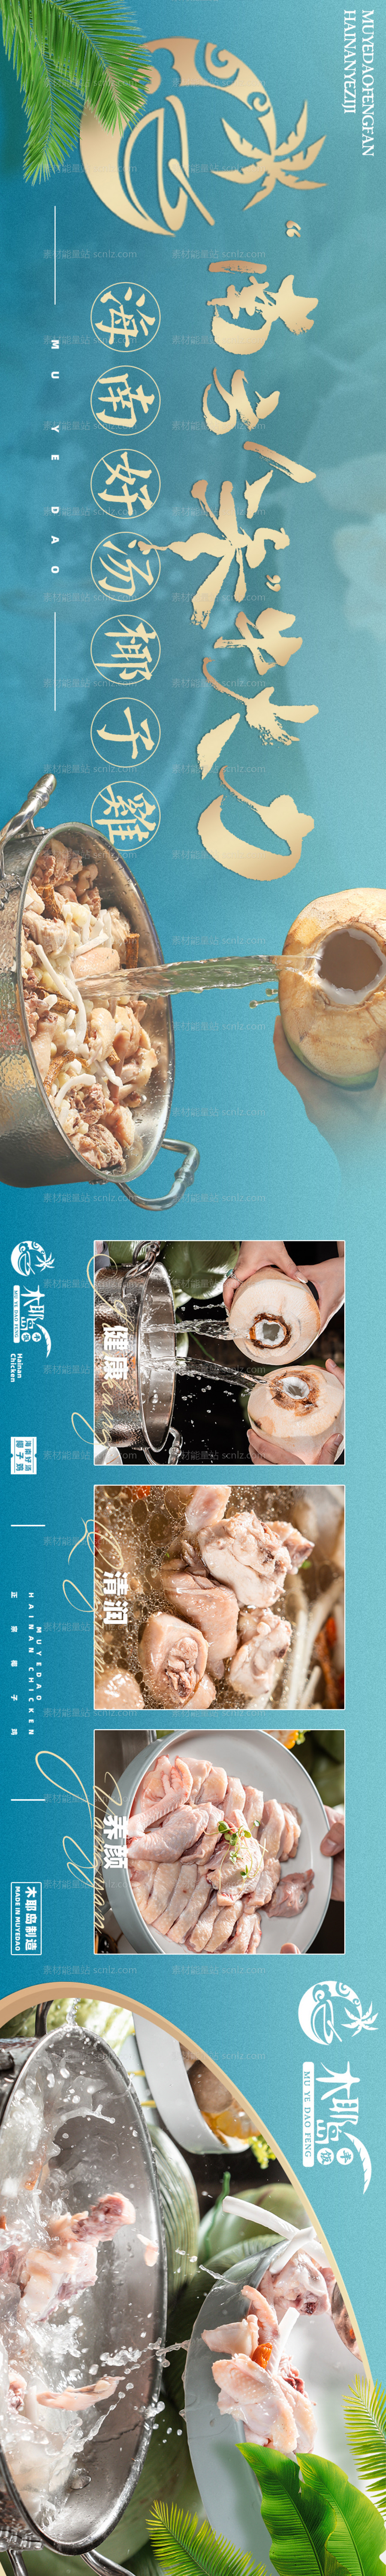 素材能量站-海南菜椰子鸡长图海报